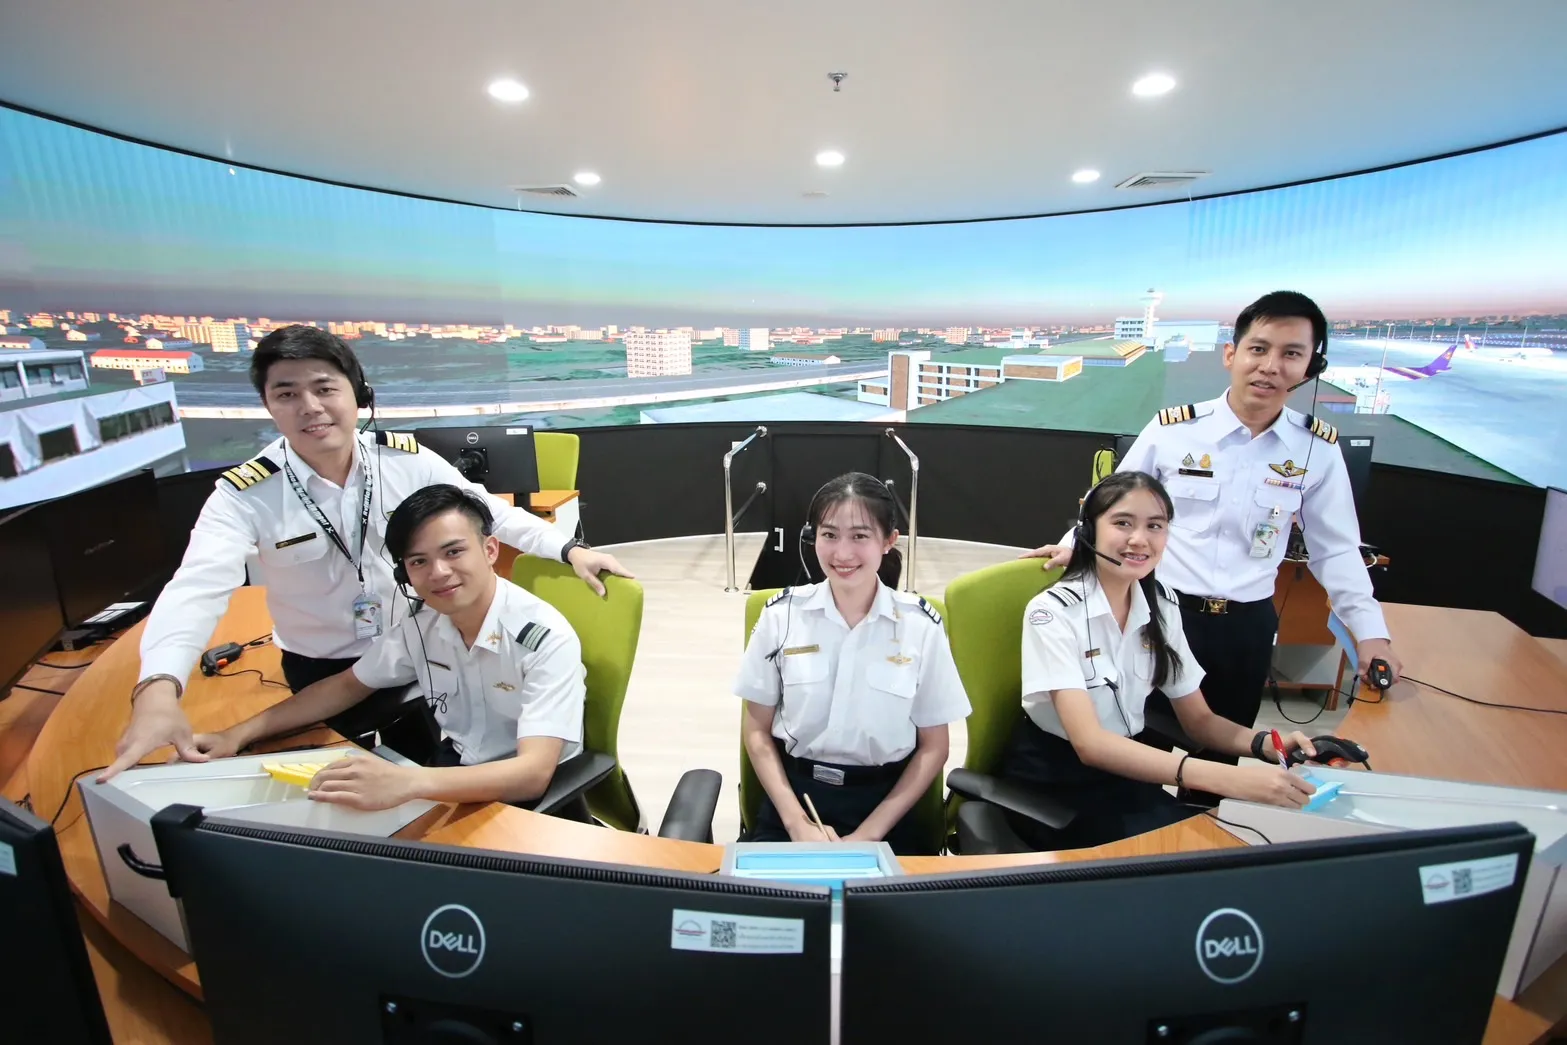 สานฝันคนอยากเป็นนักบิน สถาบันการบินพลเรือนรับสมัครนักศึกษาใหม่